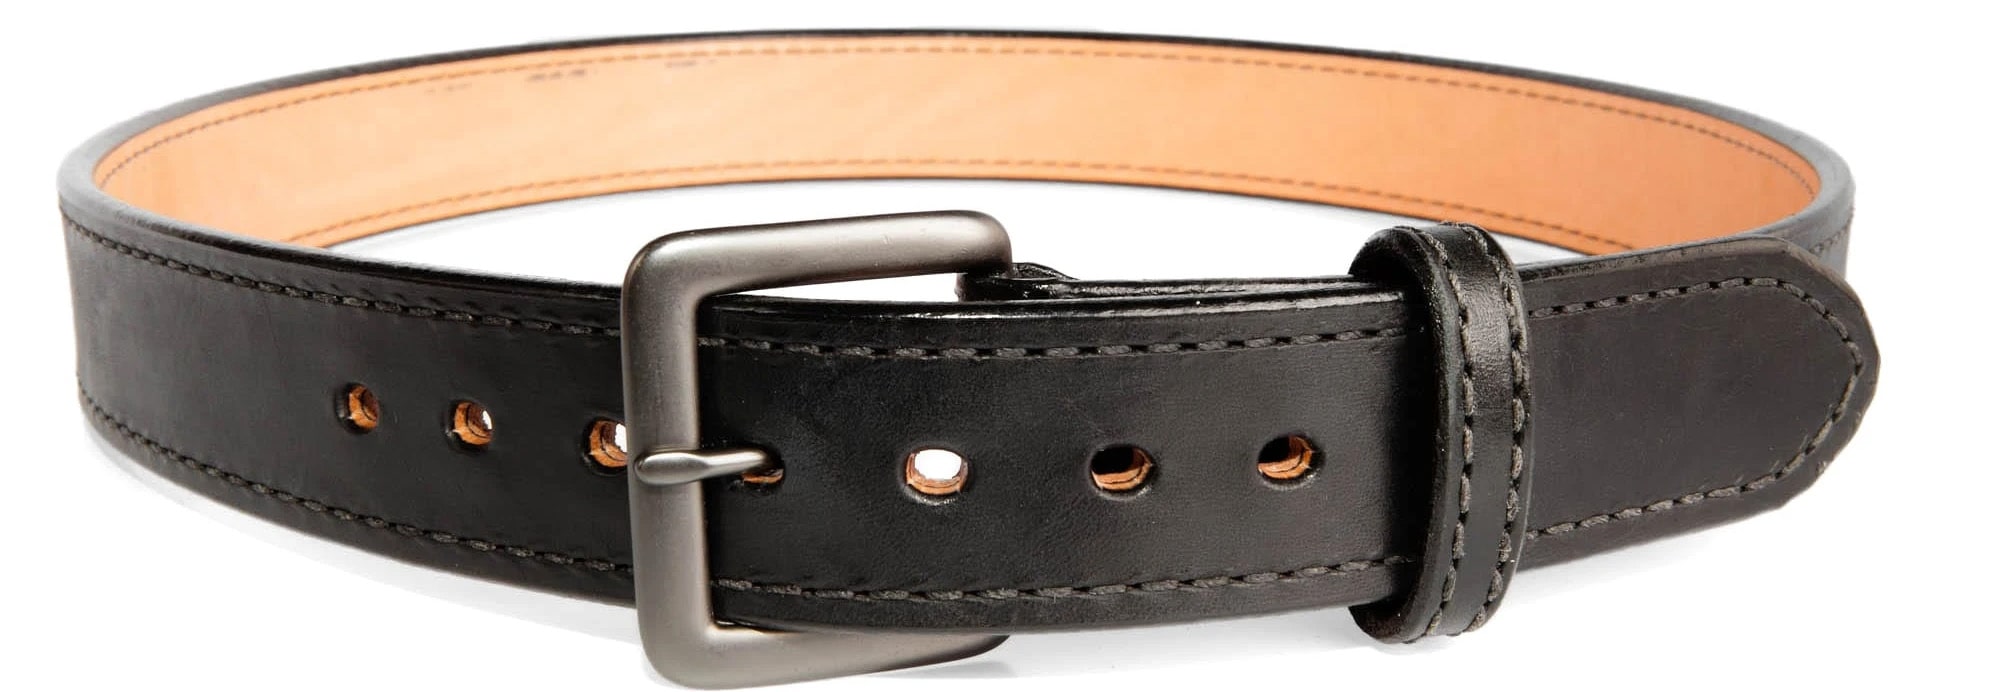 Beltman 1.25 Horsehide belt